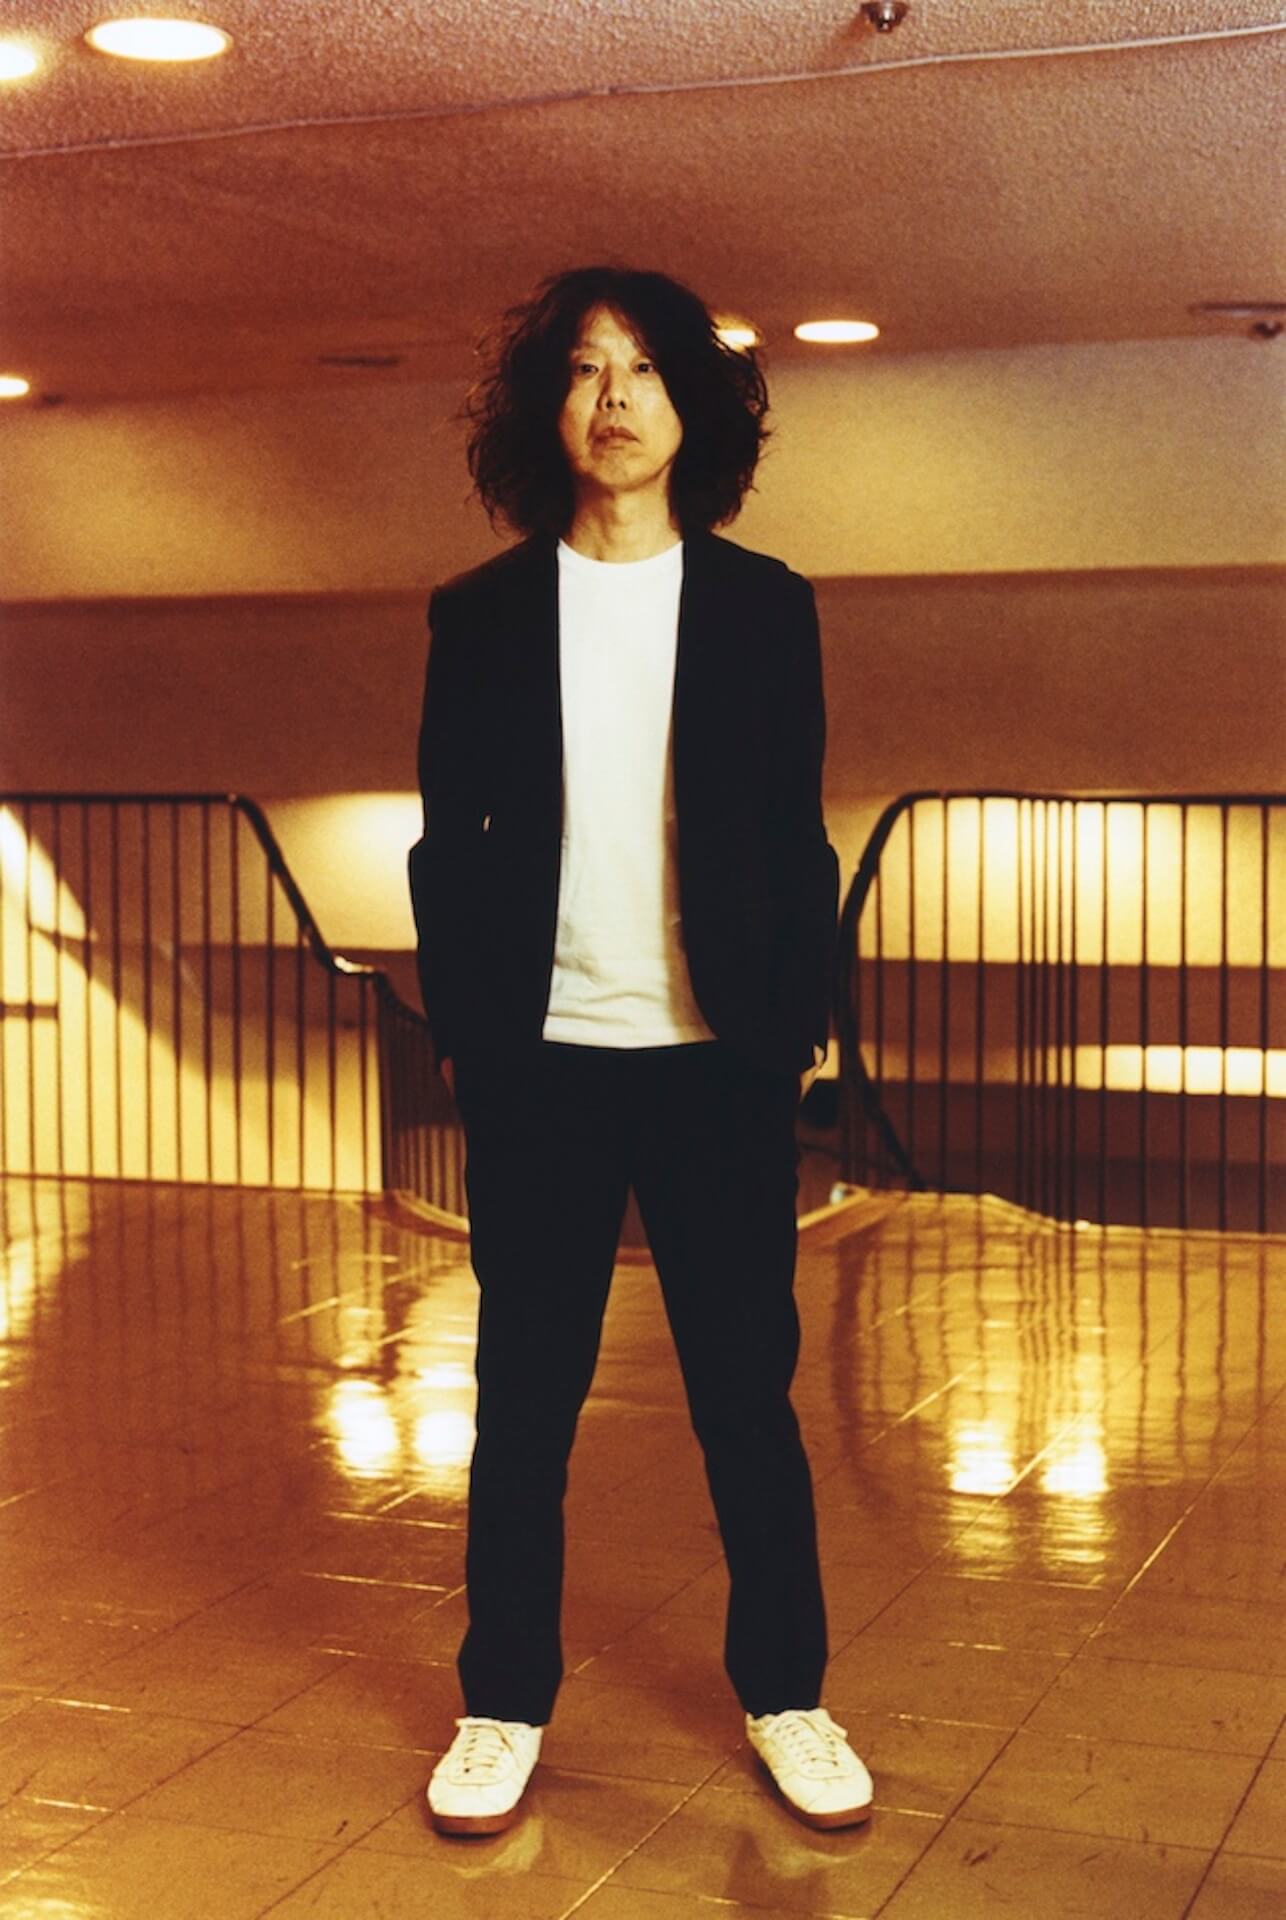 坂本慎太郎が2作連続ミュージックビデオを発表 第1弾 おぼろげナイトクラブ のミュージックビデオが公開 Qetic